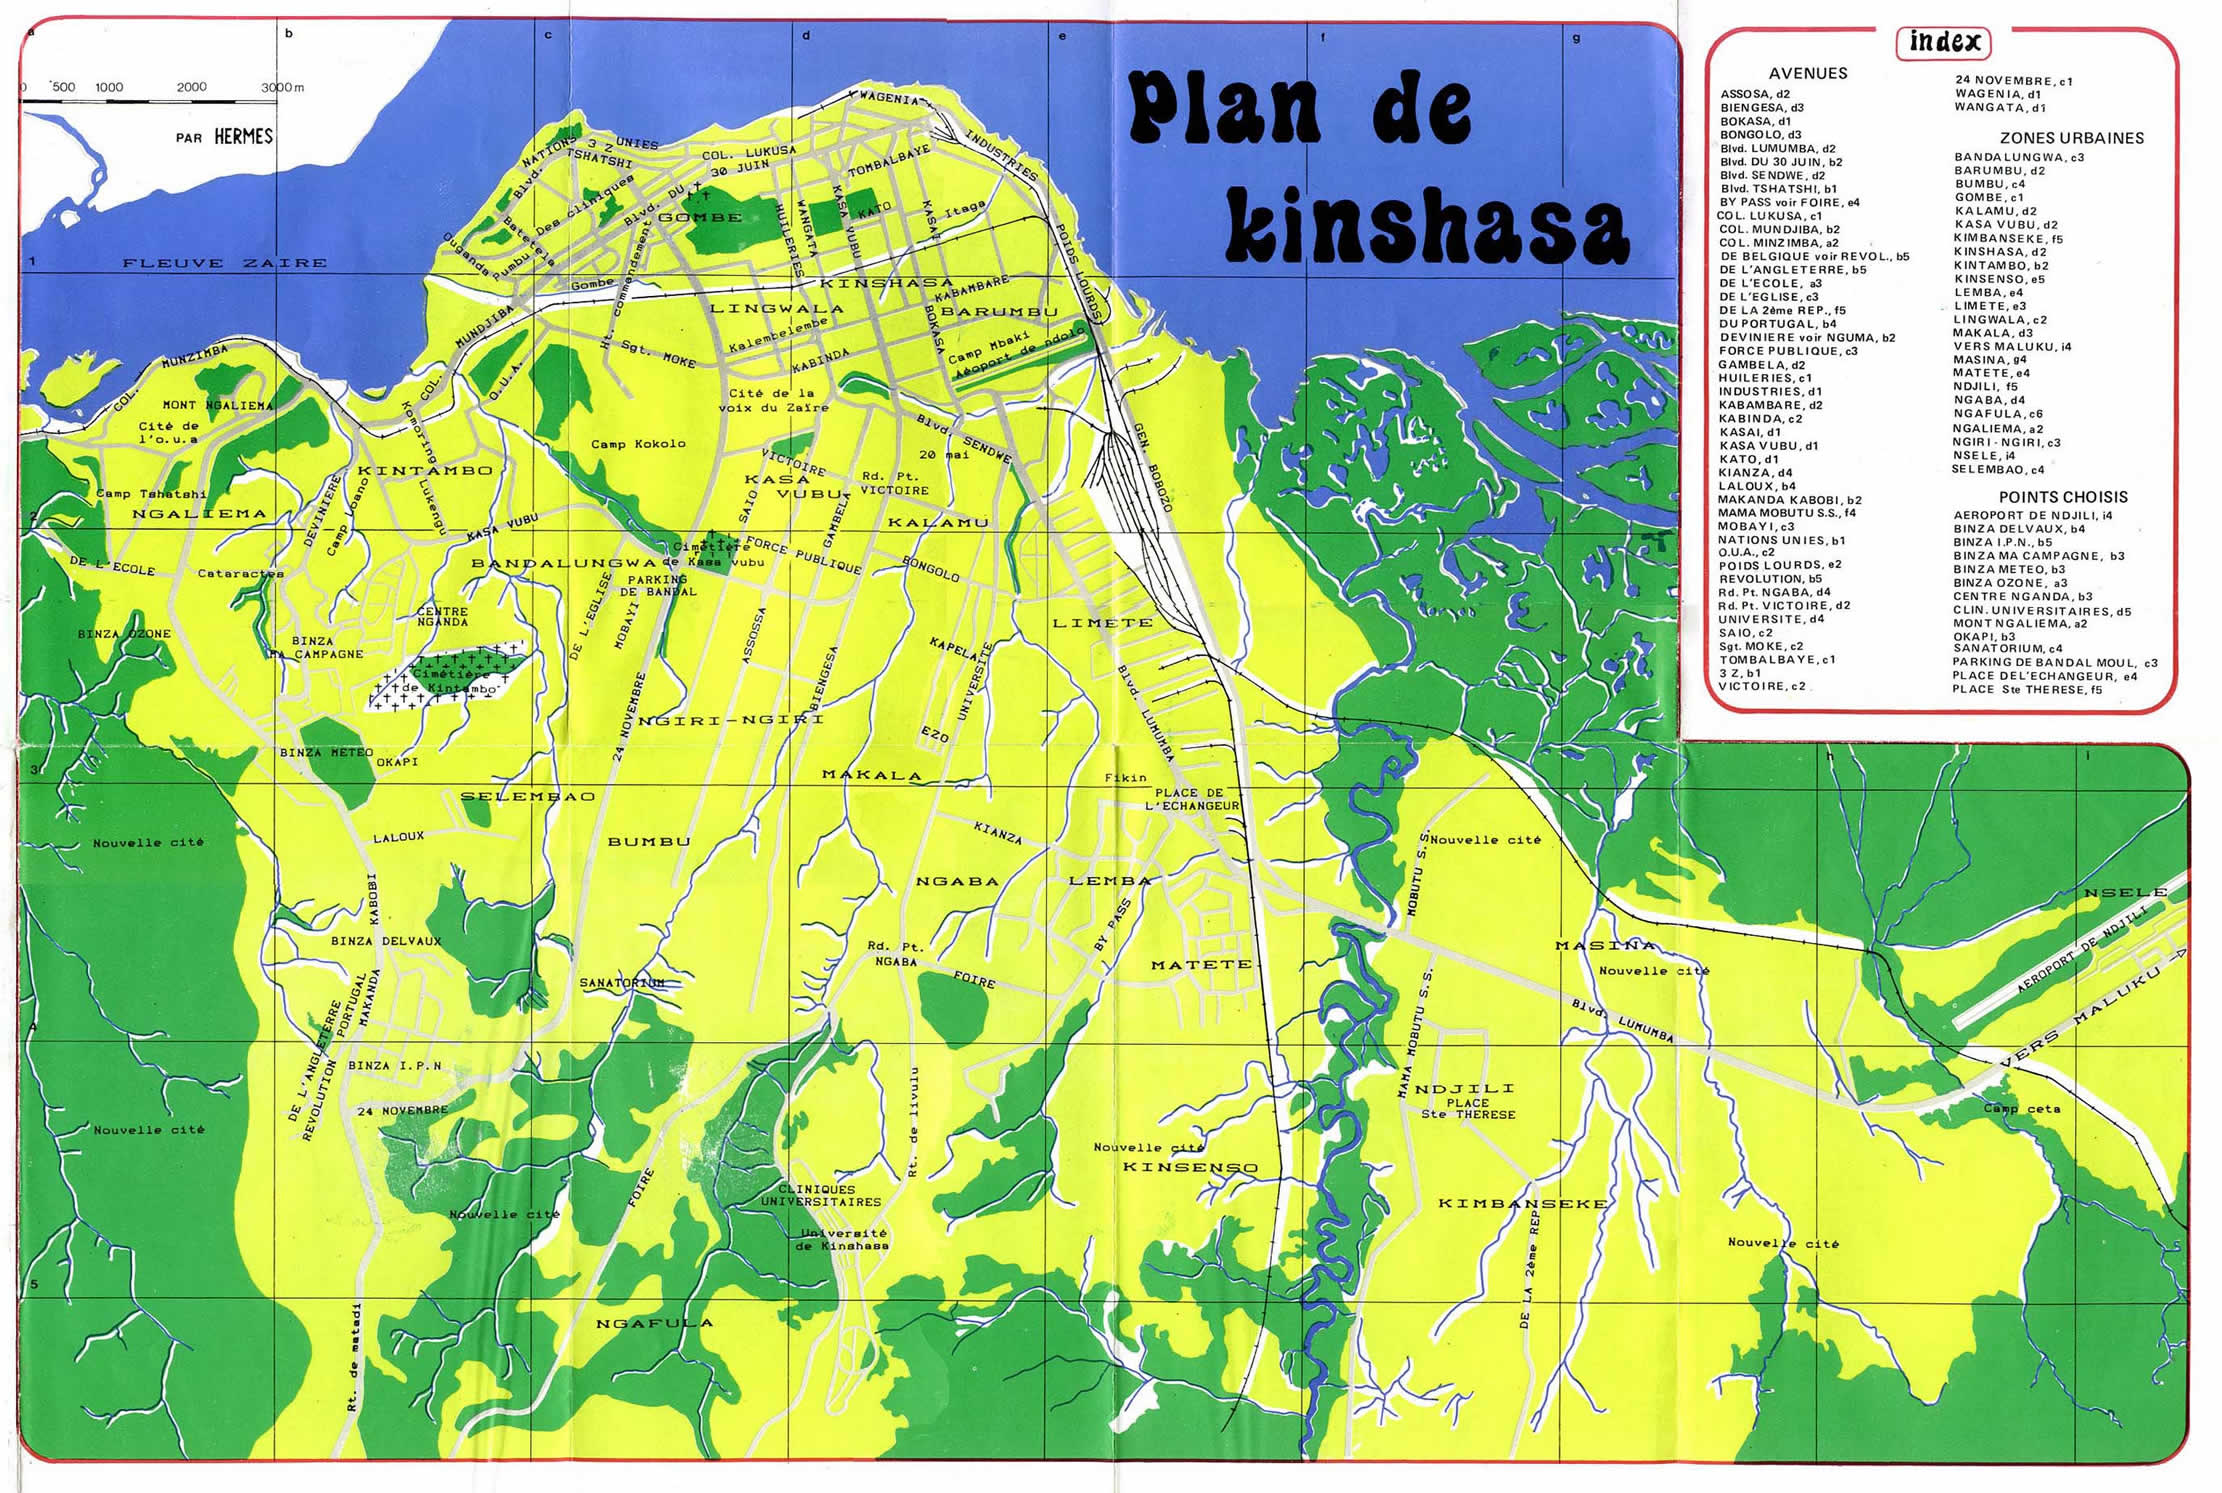 kinshasa plan